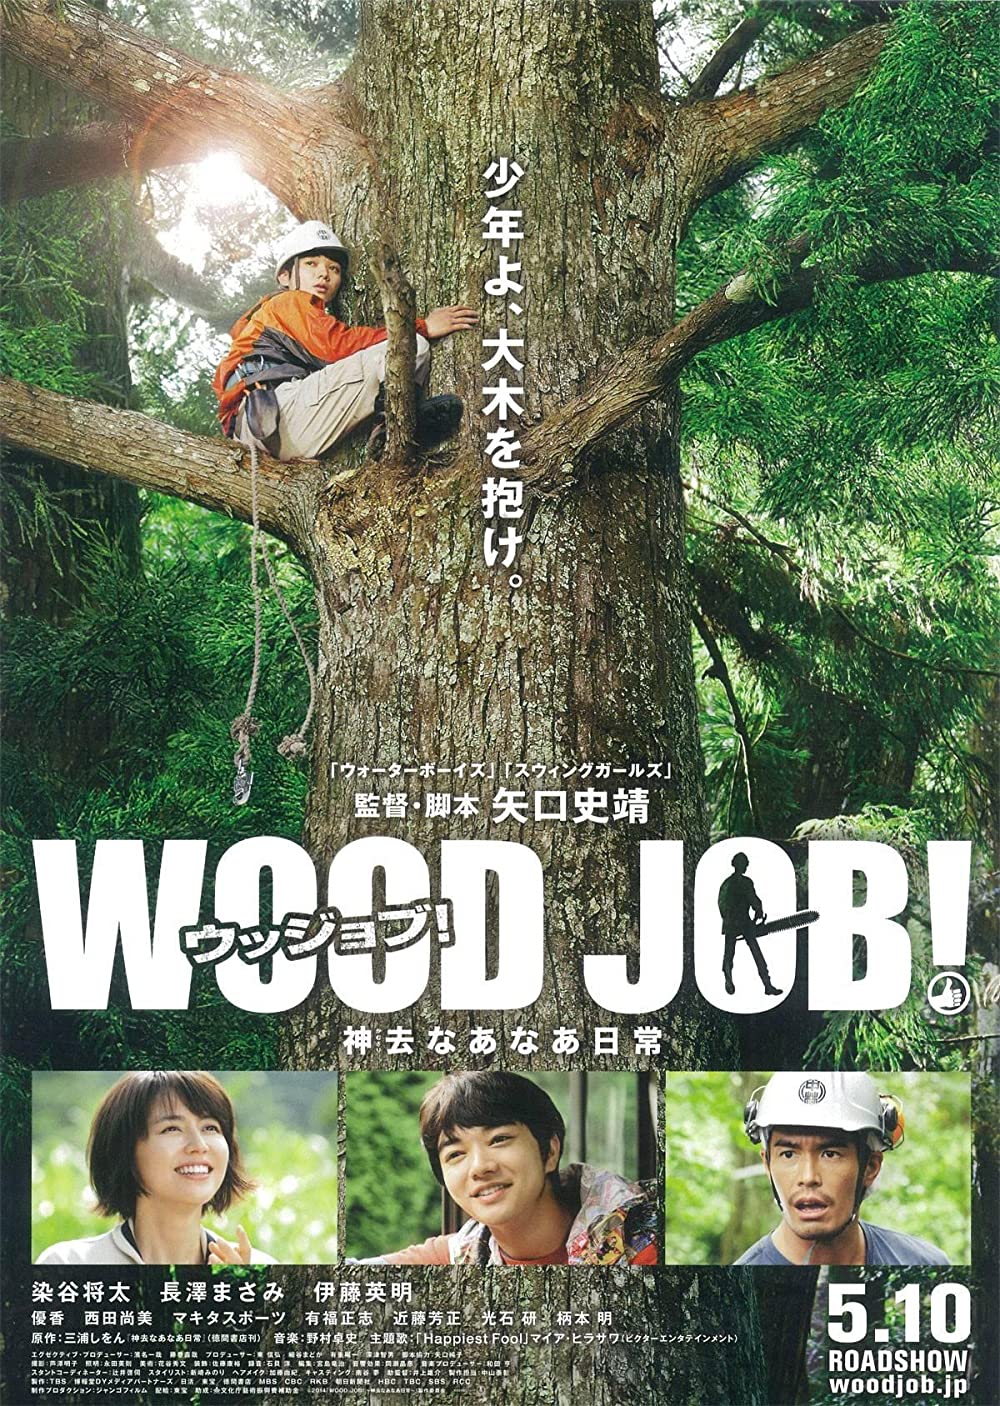 หนัง Wood job (2014) แดดส่องฟ้าเป็นสัญญาณวันใหม่